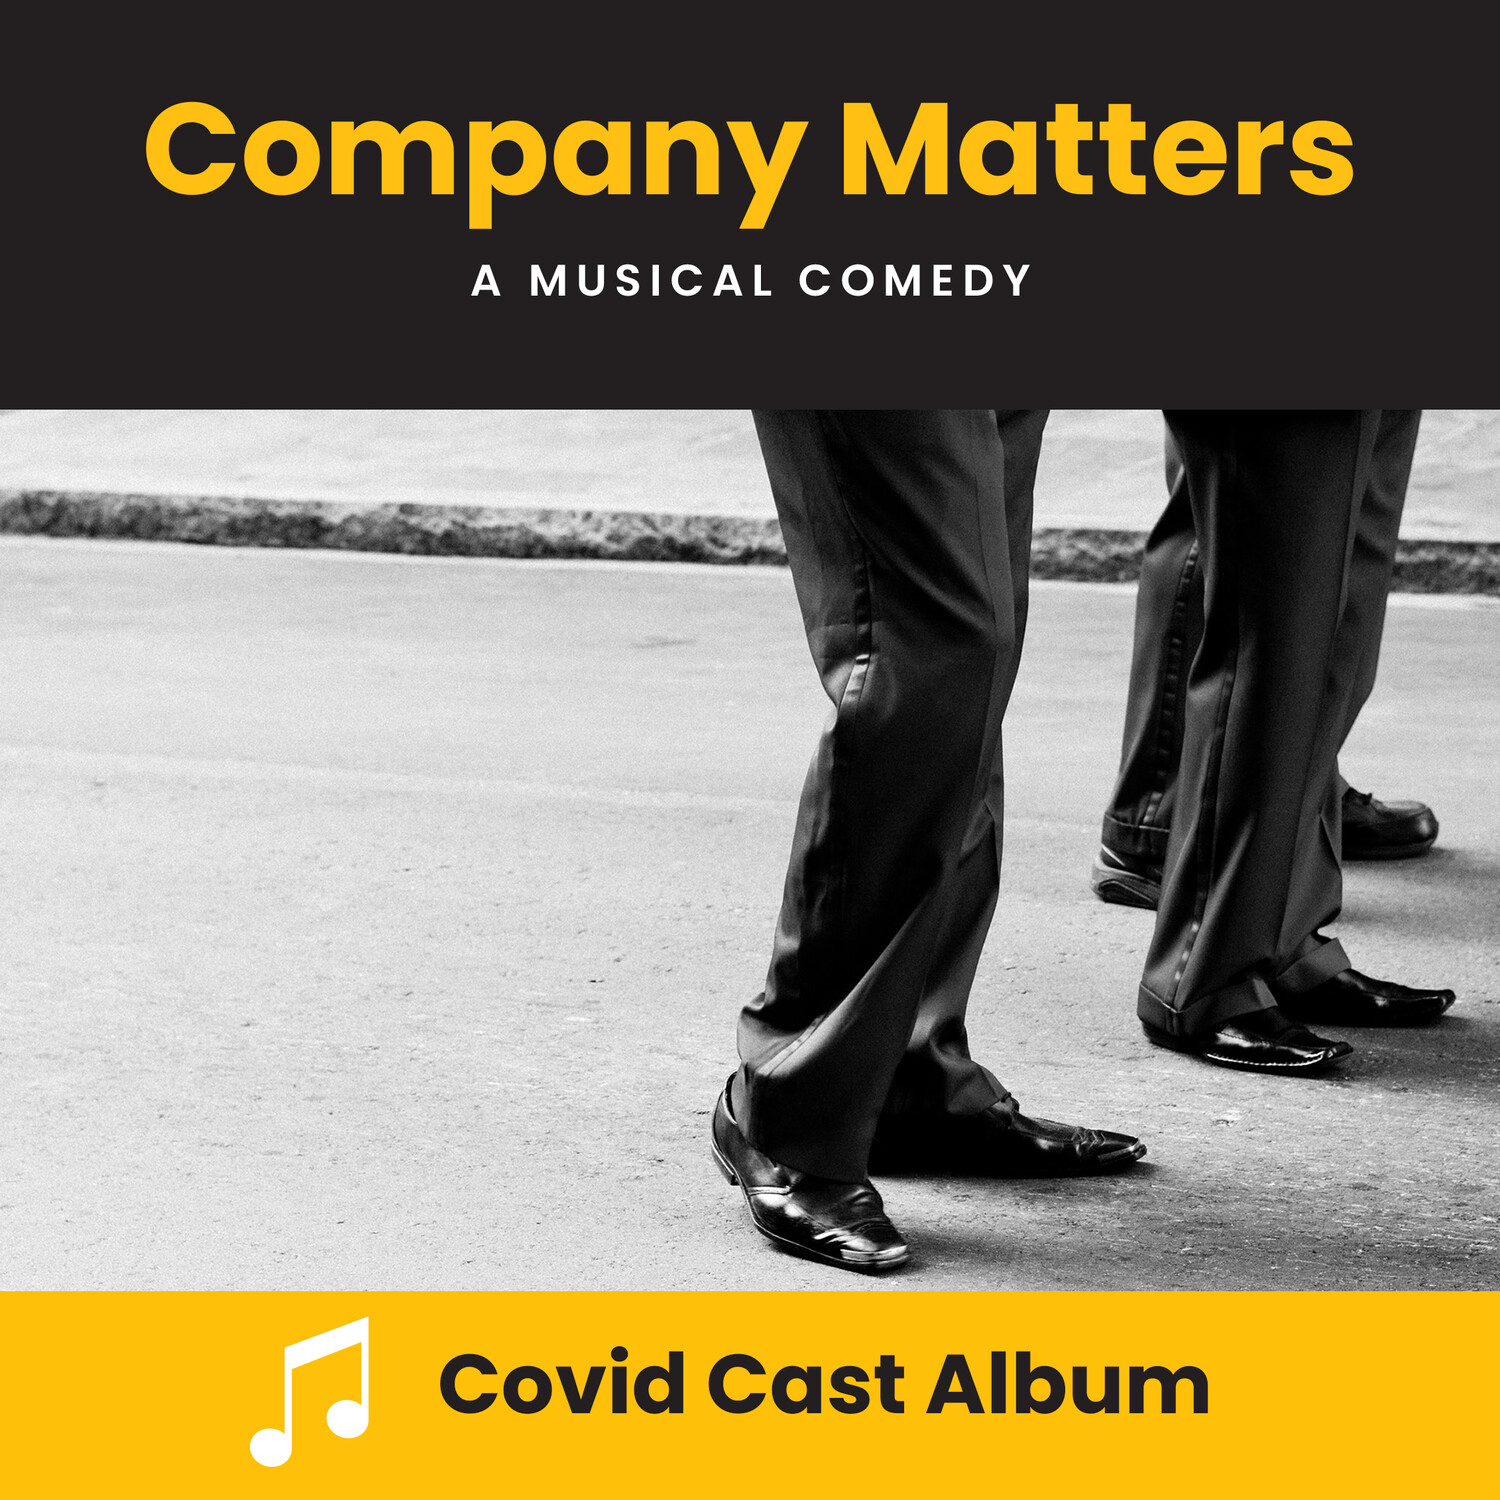 Company Matters Covid Cast Album